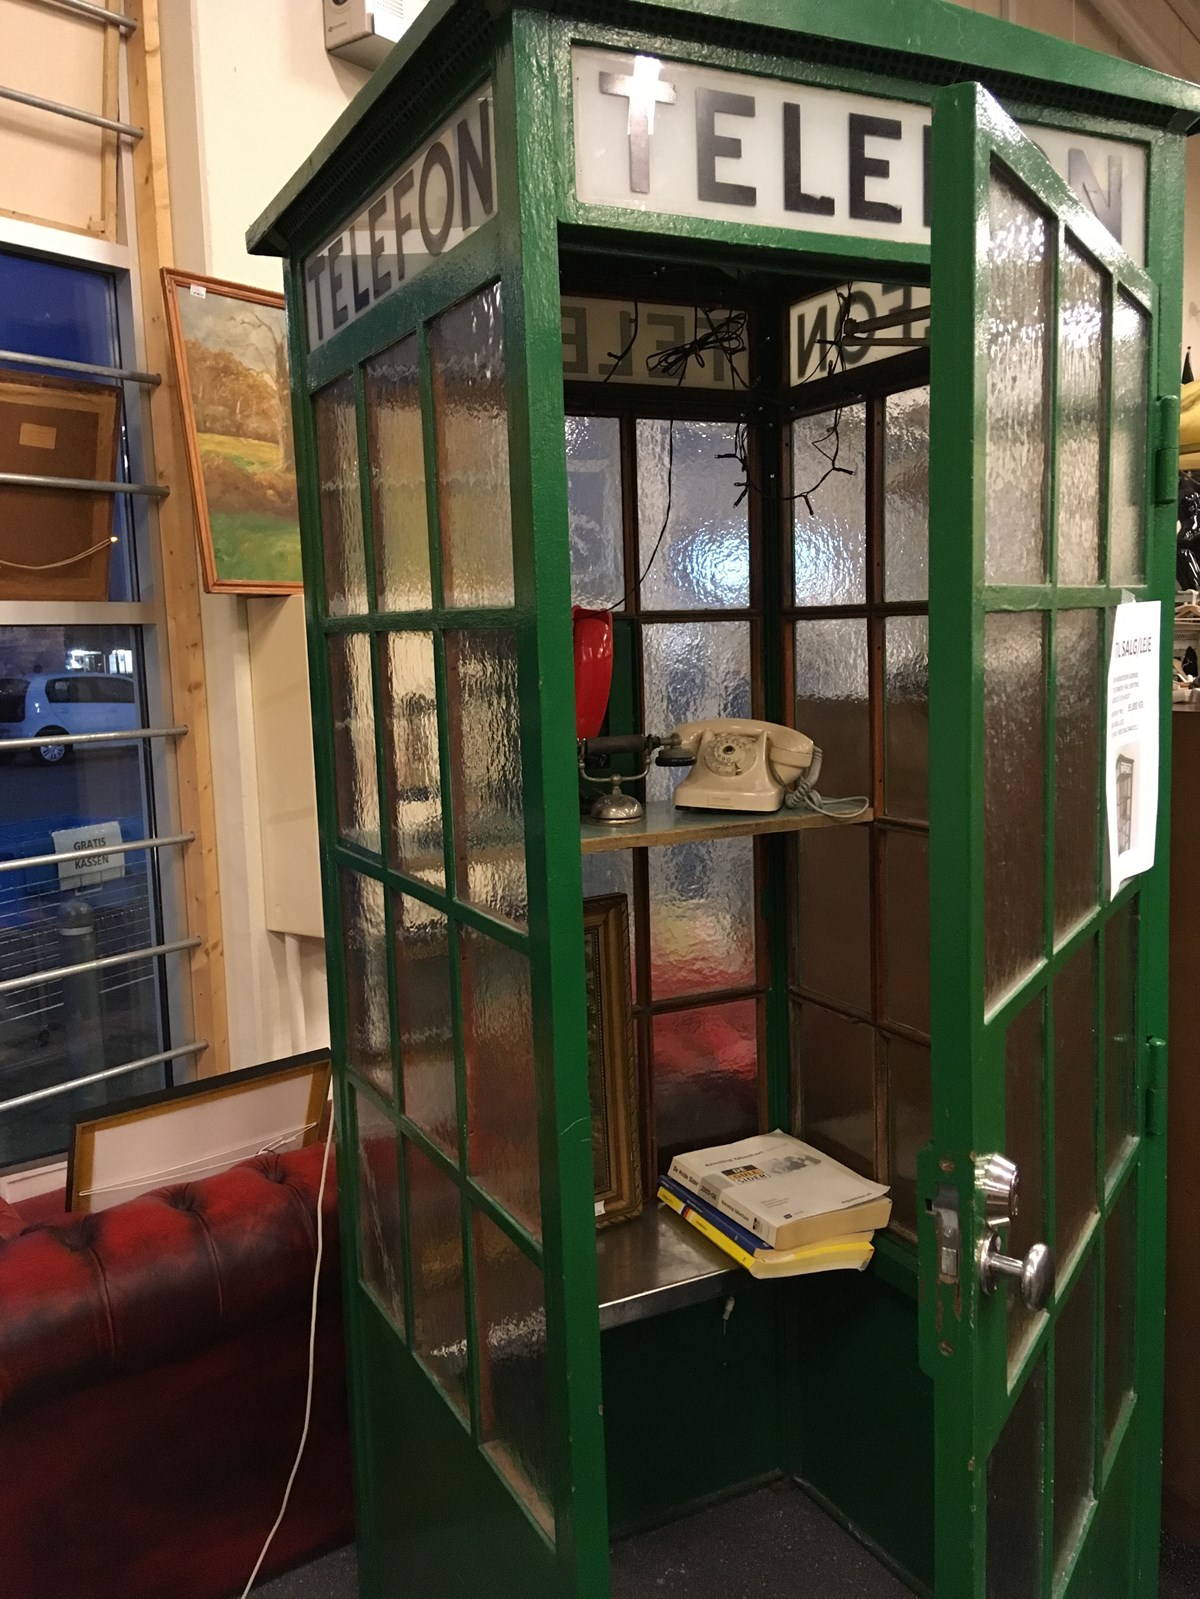 Telefonboksen er fra 1930’erne og har engang huseret på gaden ligesom andre telefonbokse. Den vejer cirka 450 kilo og har også en dør i sig, så det er muligt at lukke boksen og derved kunne tale uforstyrret. Der hører ingen telefon med til telefonboksen. Telefonboksen kan låses udefra